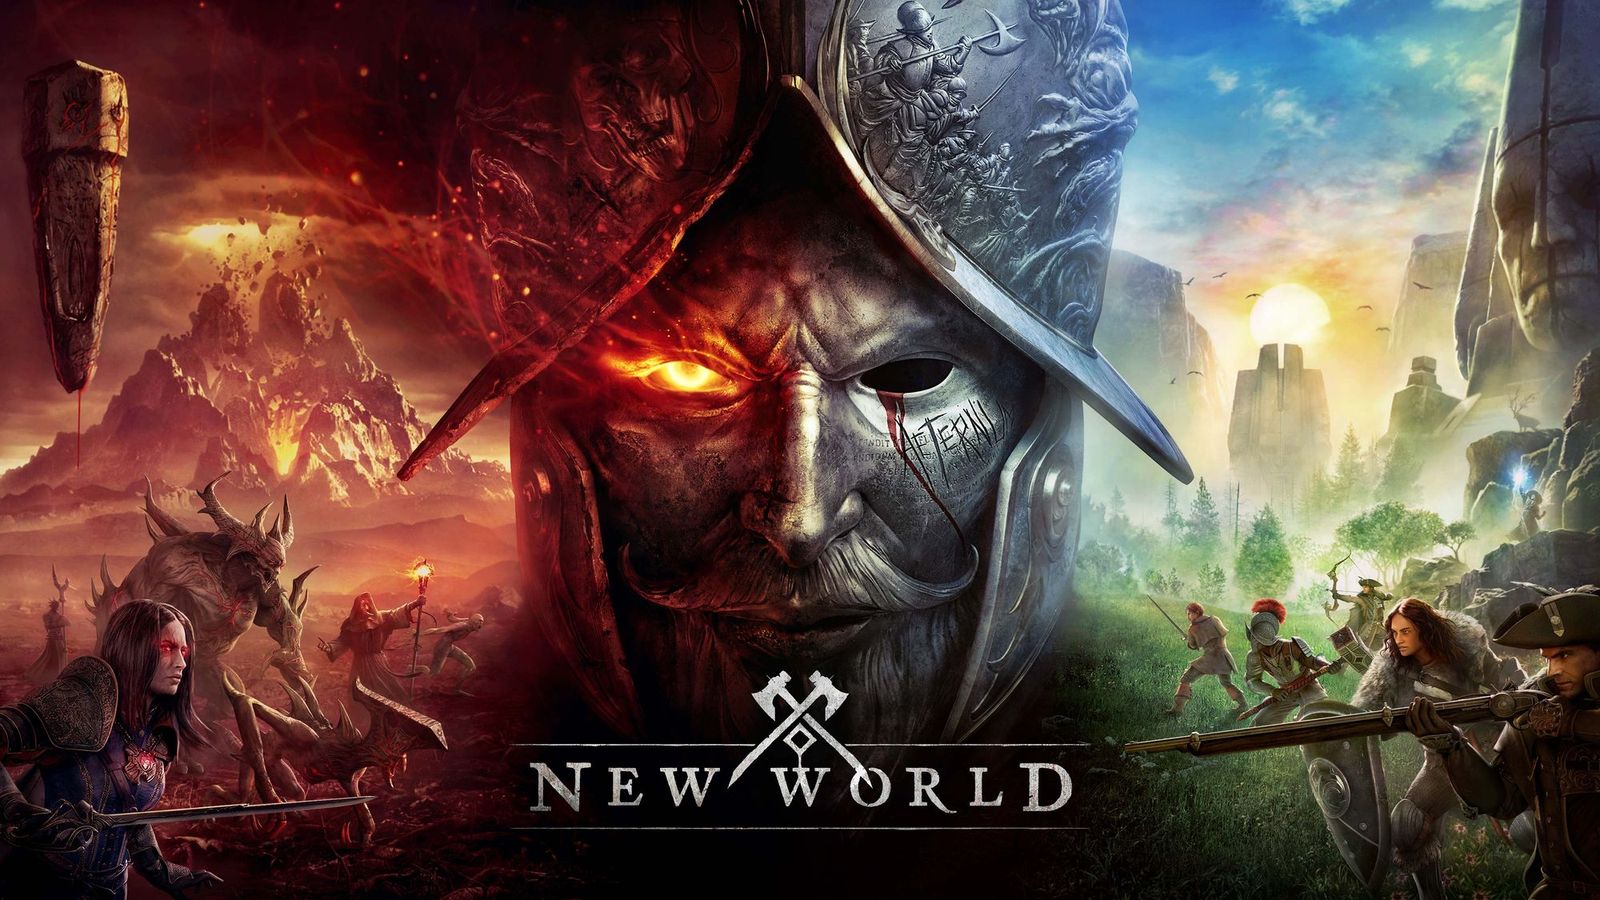 New World: New World kaufen - lohnt sich die Deluxe Edition?